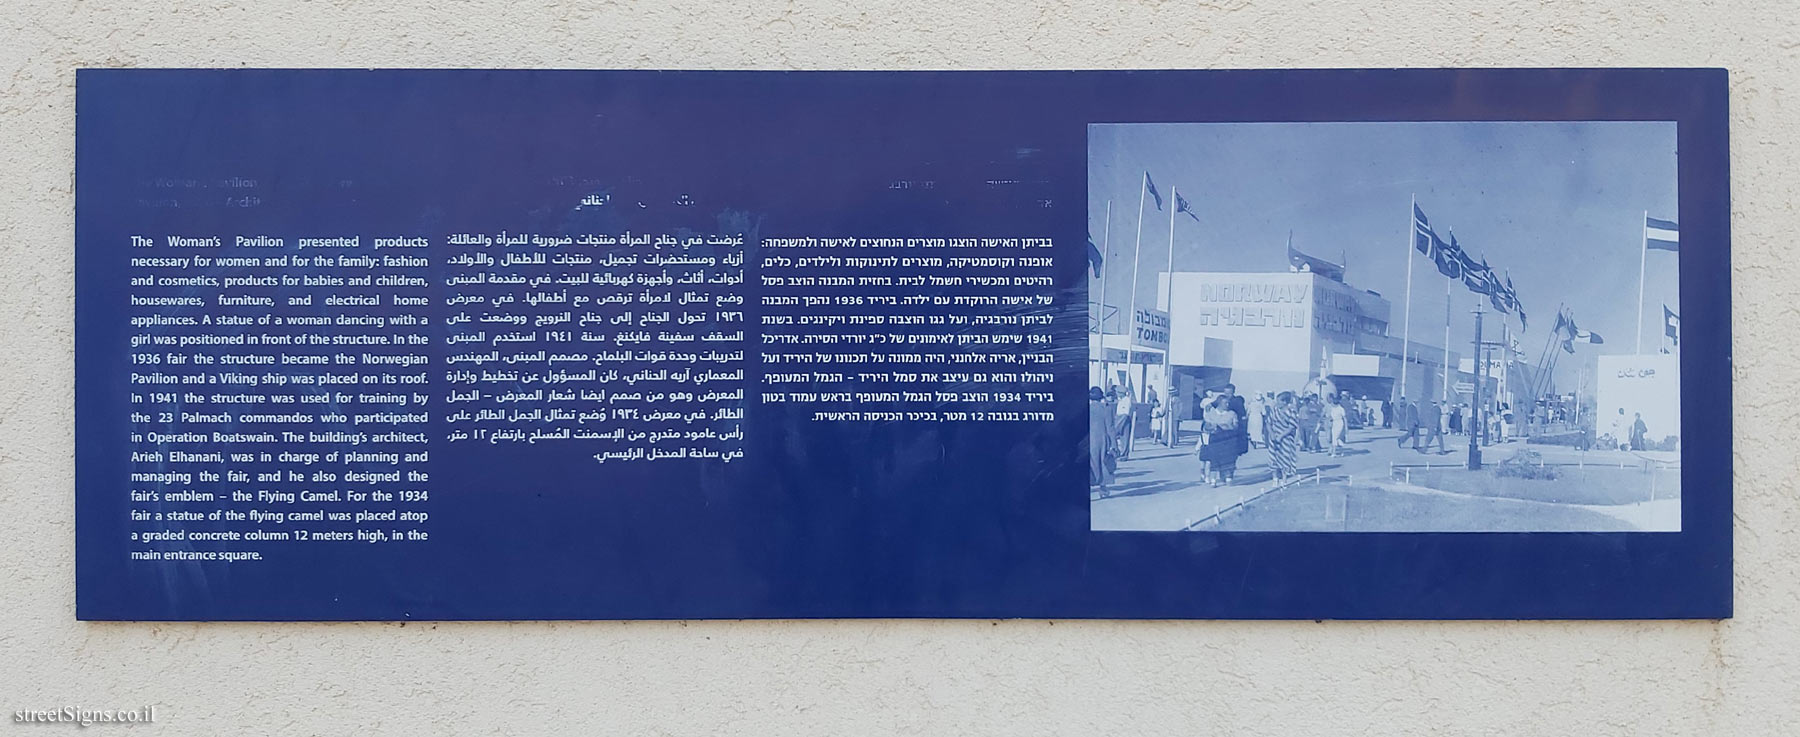 Tel Aviv - Levant Fair - Woman’s Pavilion